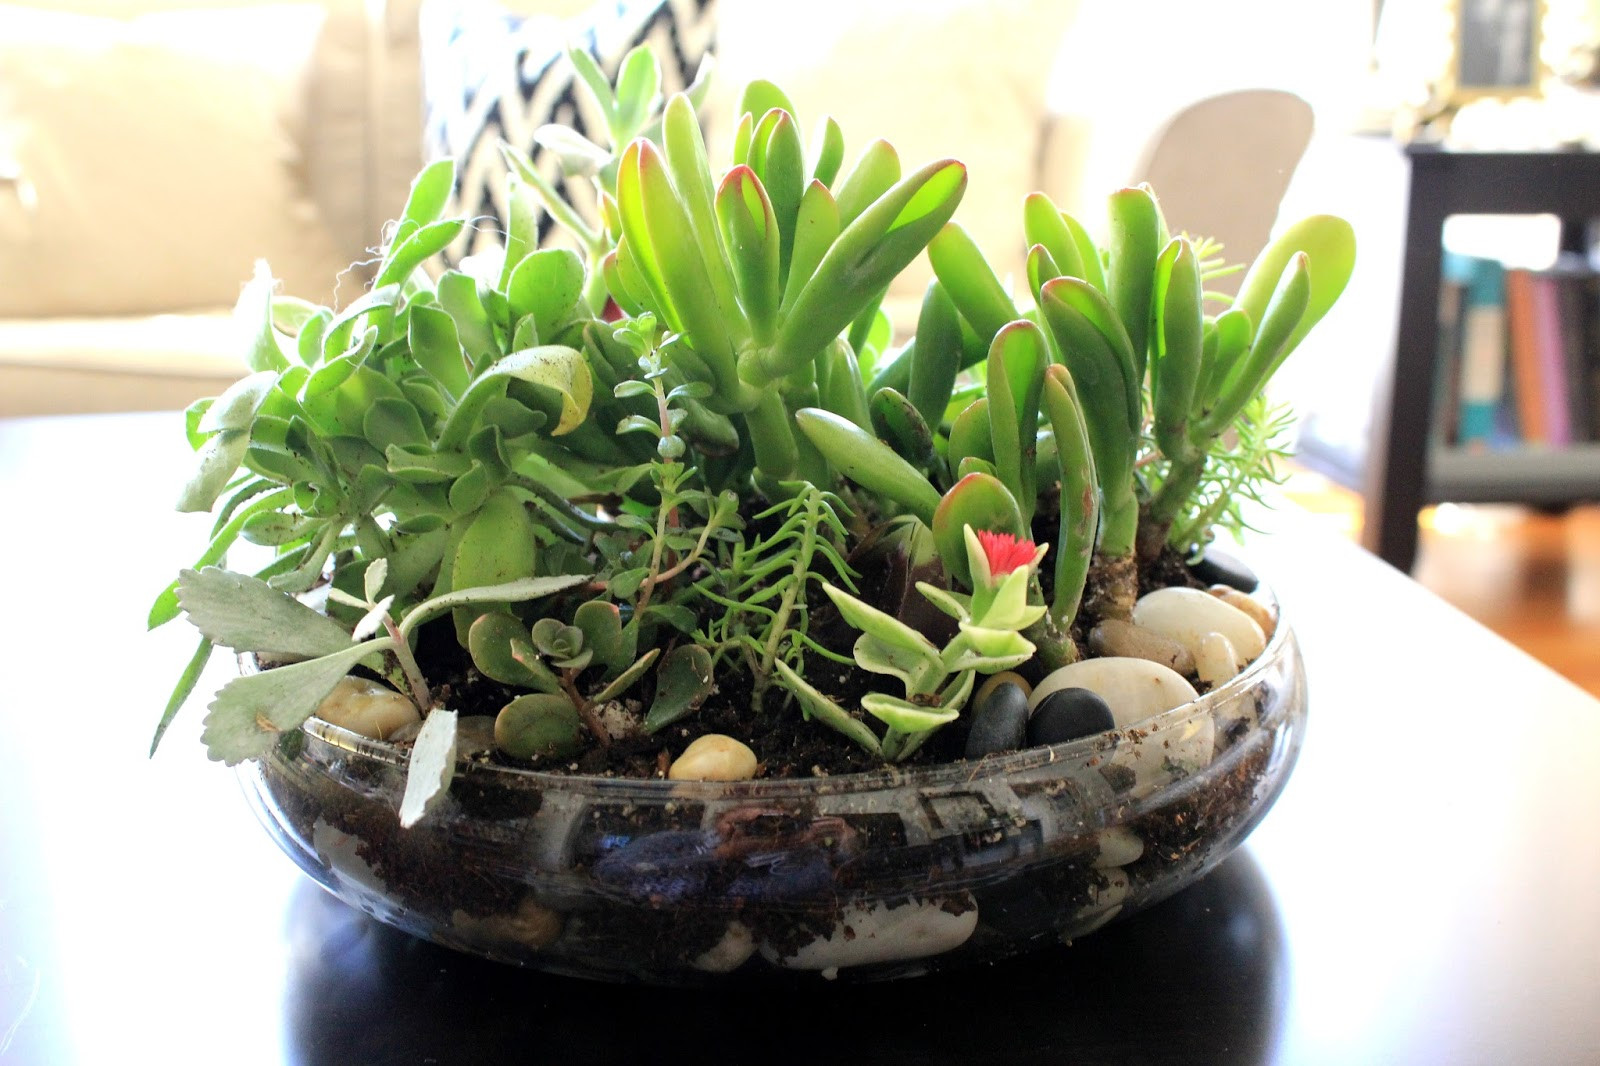 Best ideas about DIY Succulent Terrarium
. Save or Pin Cup Half Full Succulent Terrarium DIY Now.